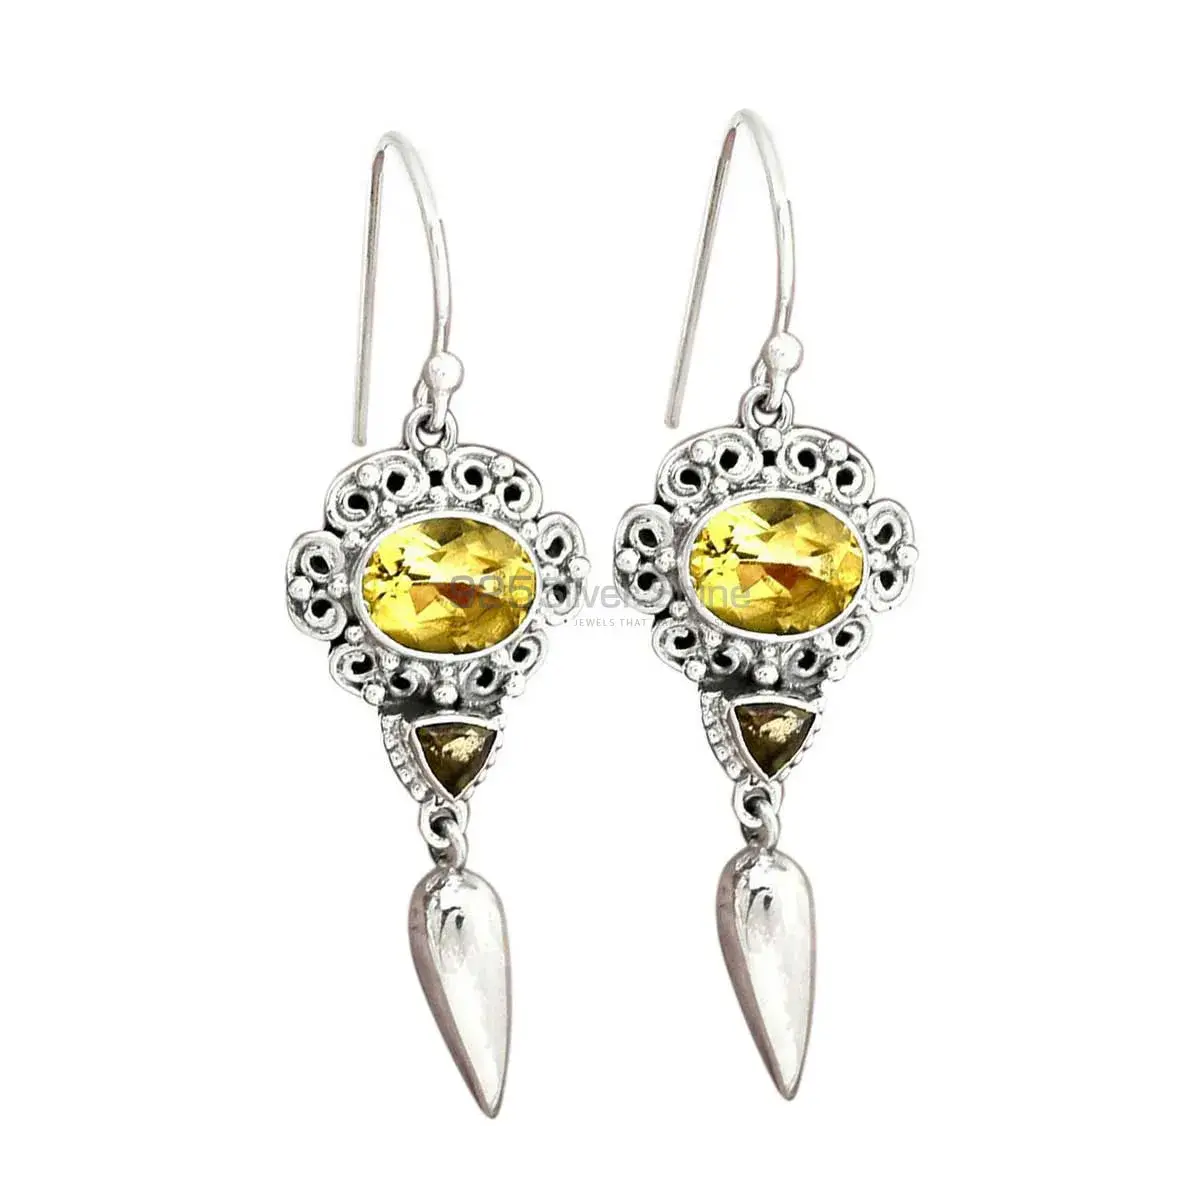 Semi Precious Multi Gemstone Earrings Wholesaler In 925 Sterling Silver Jewelry 925SE2443